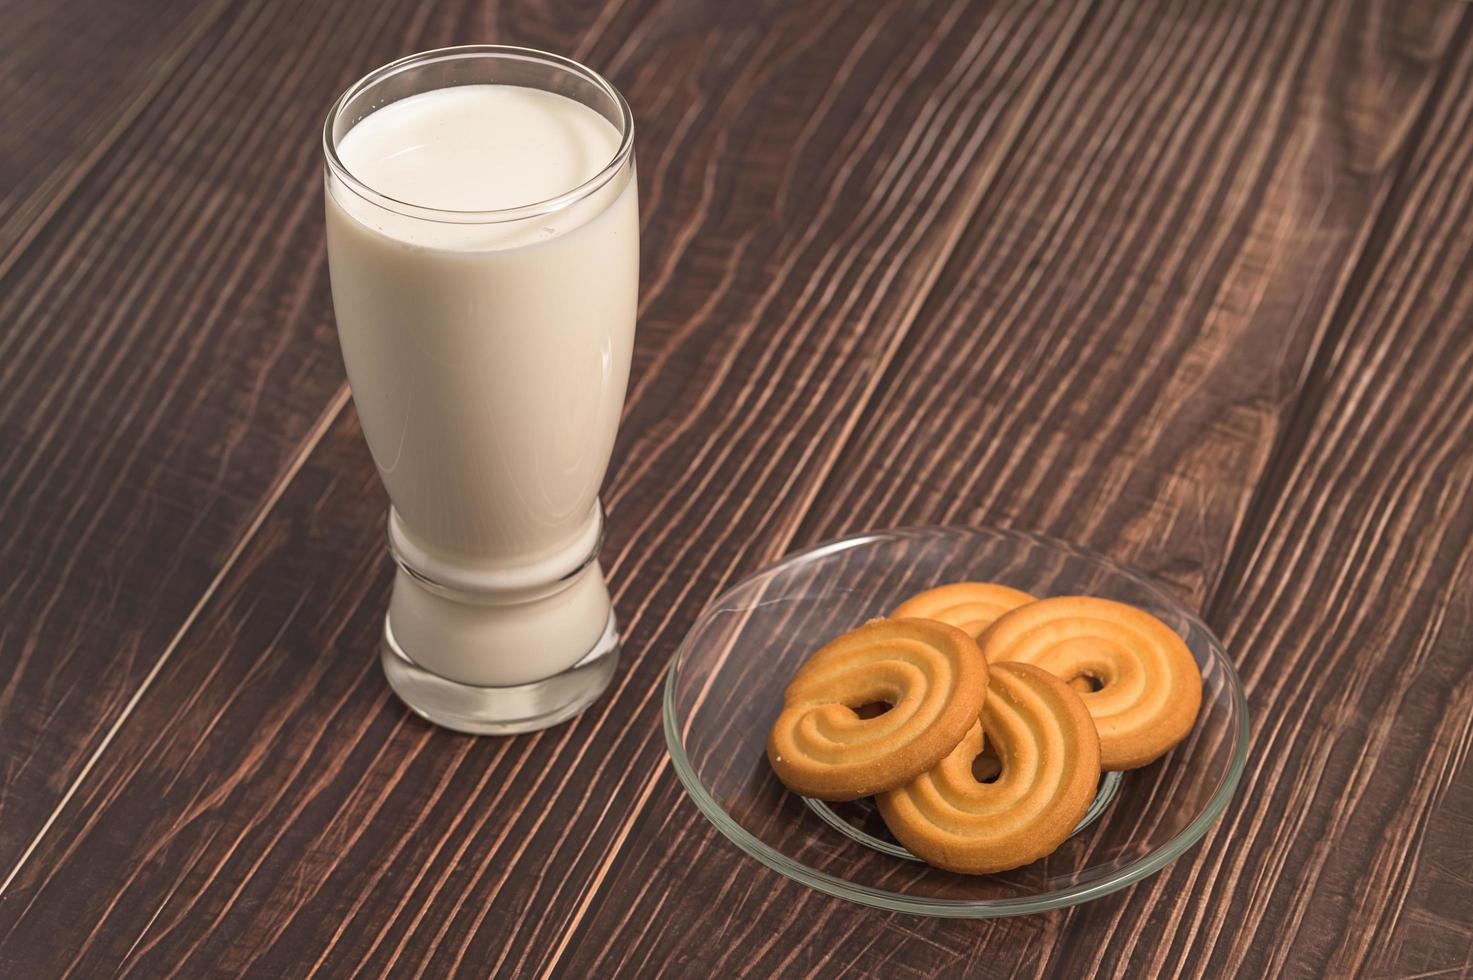 världens mjölkdag, drick mjölk och äta kakor, hälsosam frukost foto